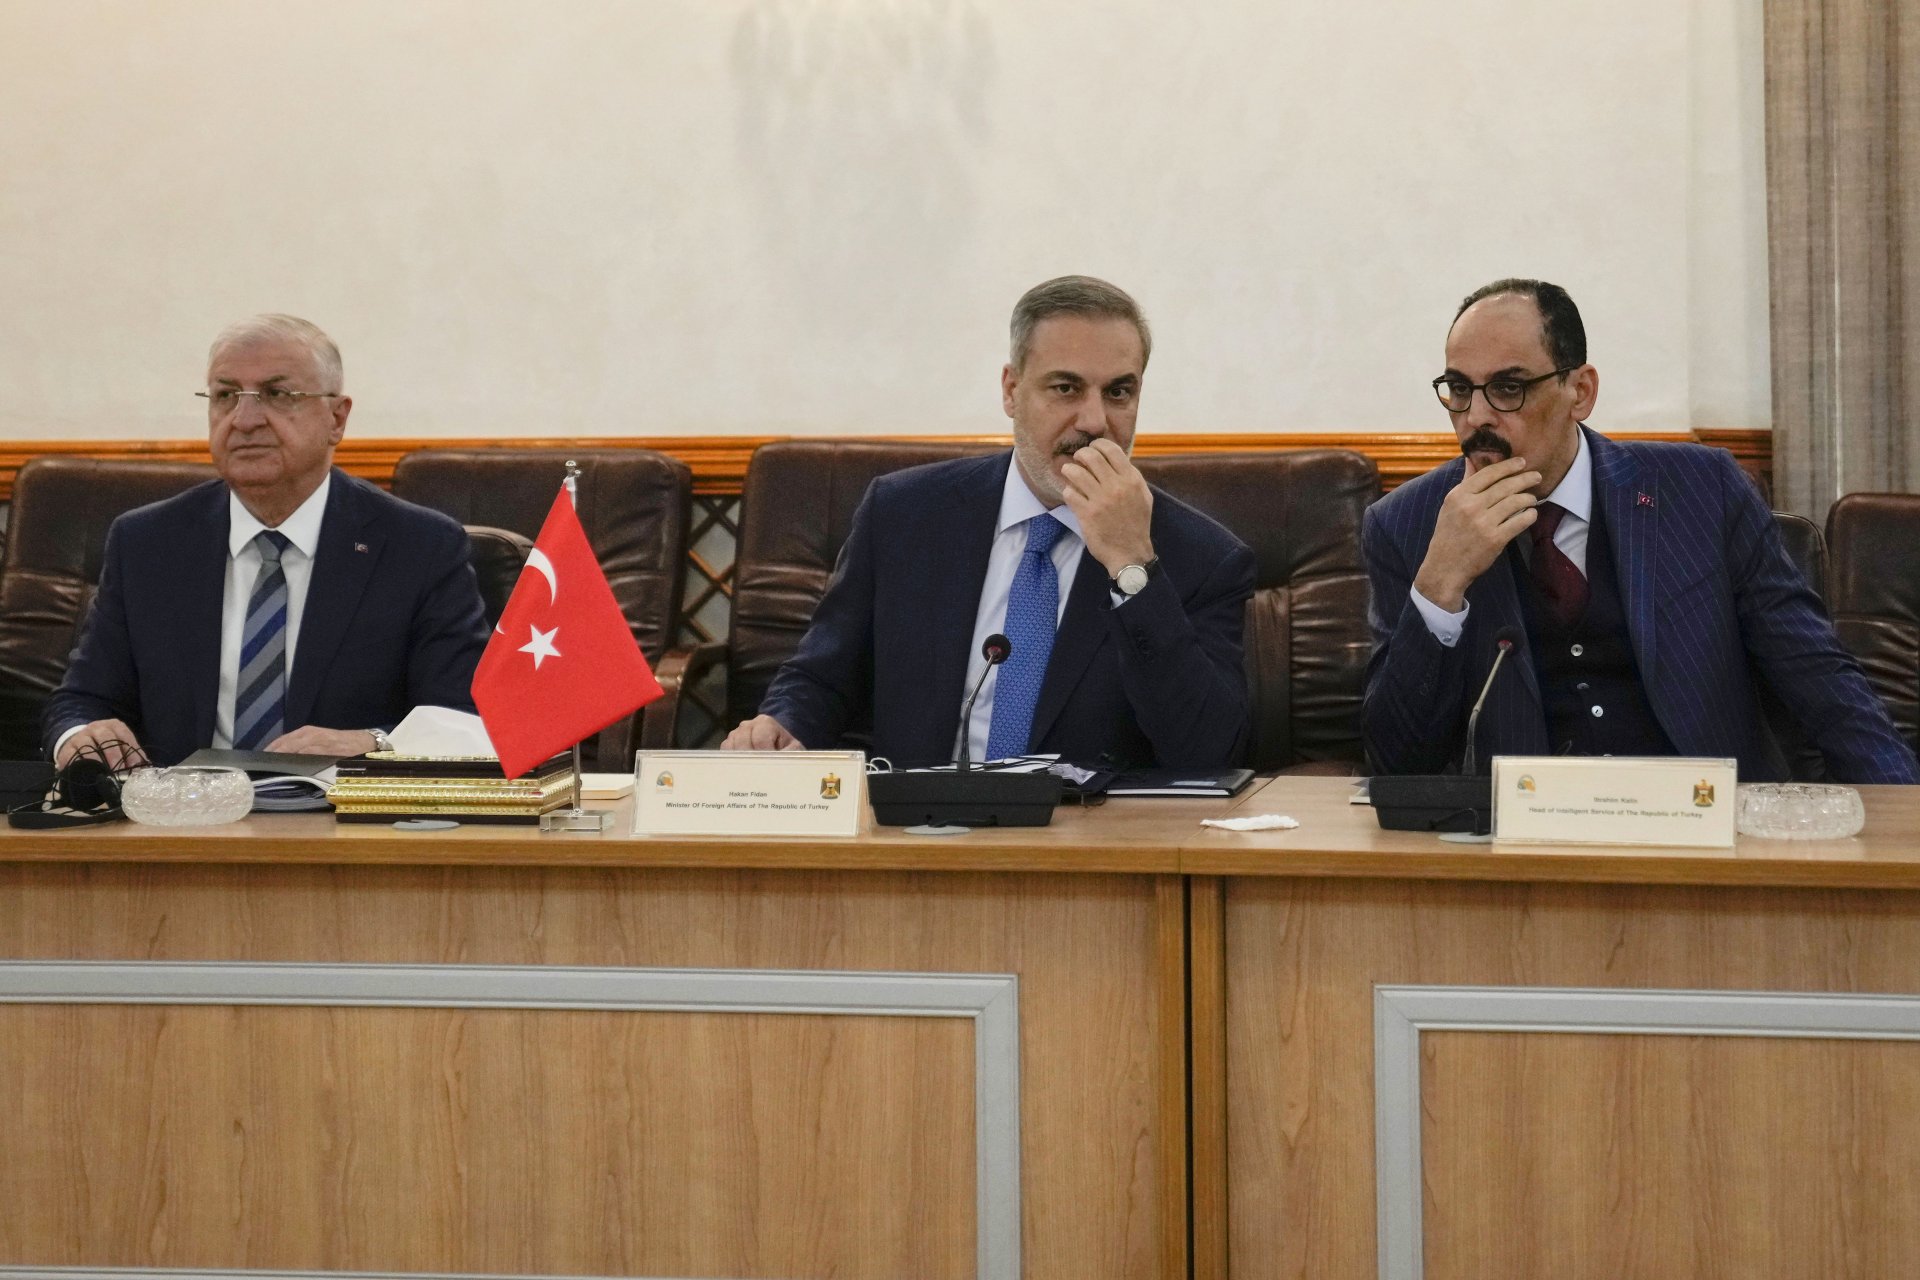 Хакан Фидан (в центъра), Яшар Гюлер (вляво) и Ибрахим Калън на срещата във външното министерство в Багдад